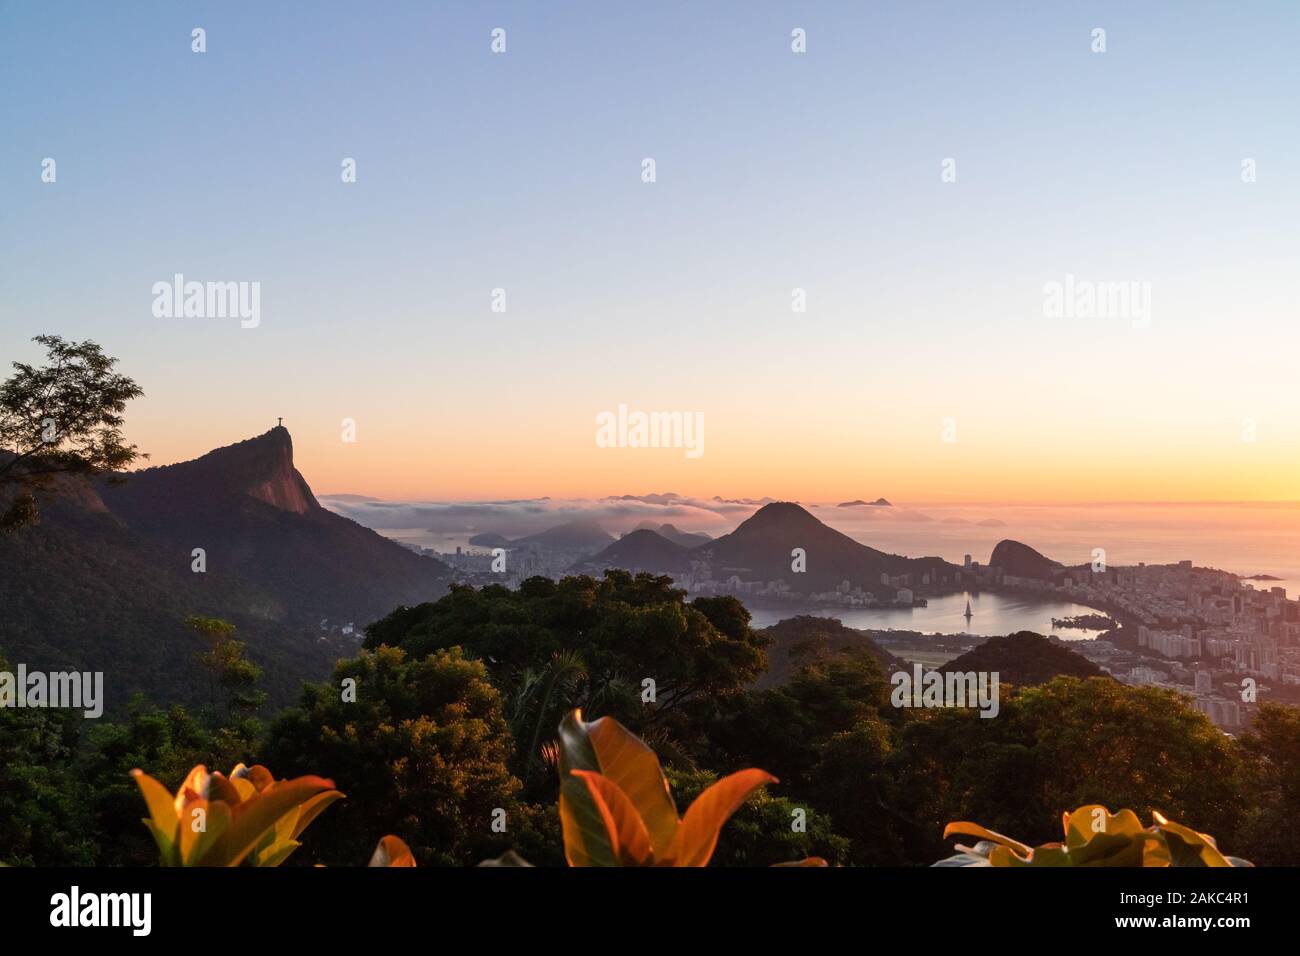 Sonnenaufgang über der Stadt Rio de Janeiro, Zuckerhut und die Christusstatue Statue von Vista Chinesa. Stockfoto